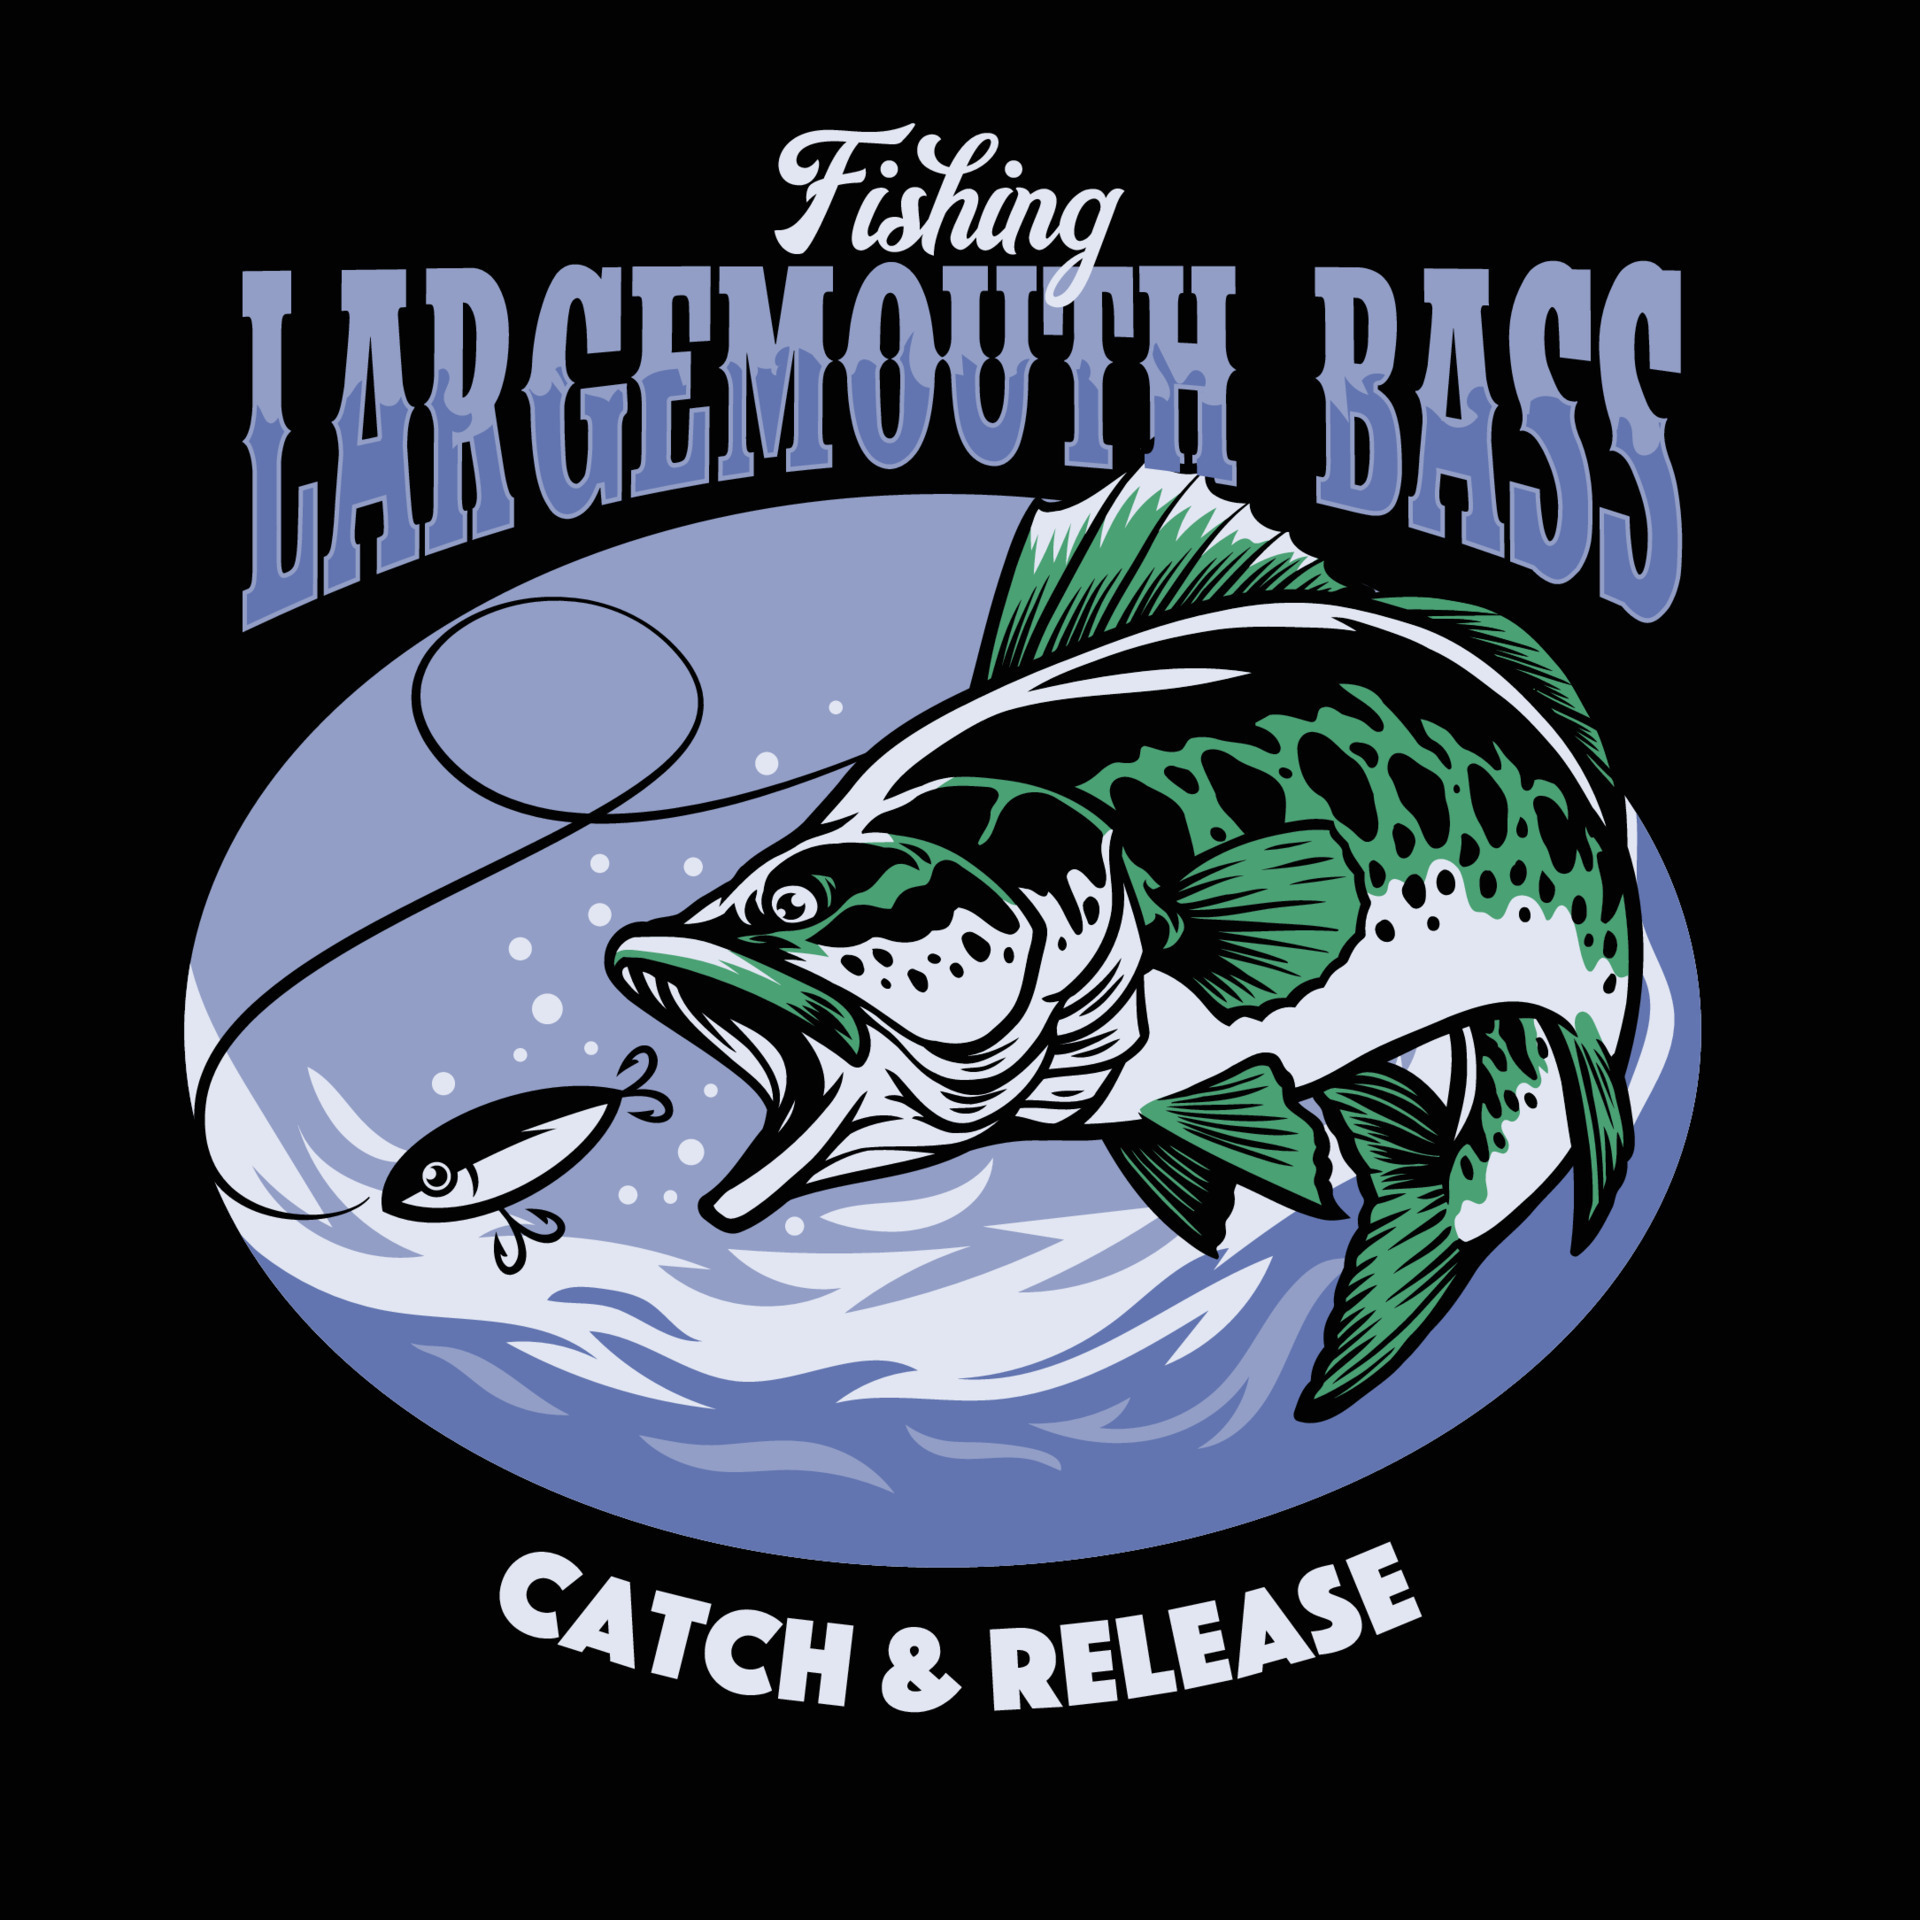 fishing largemouth bass t-shirt design 23059718 Vector Art at Vecteezy